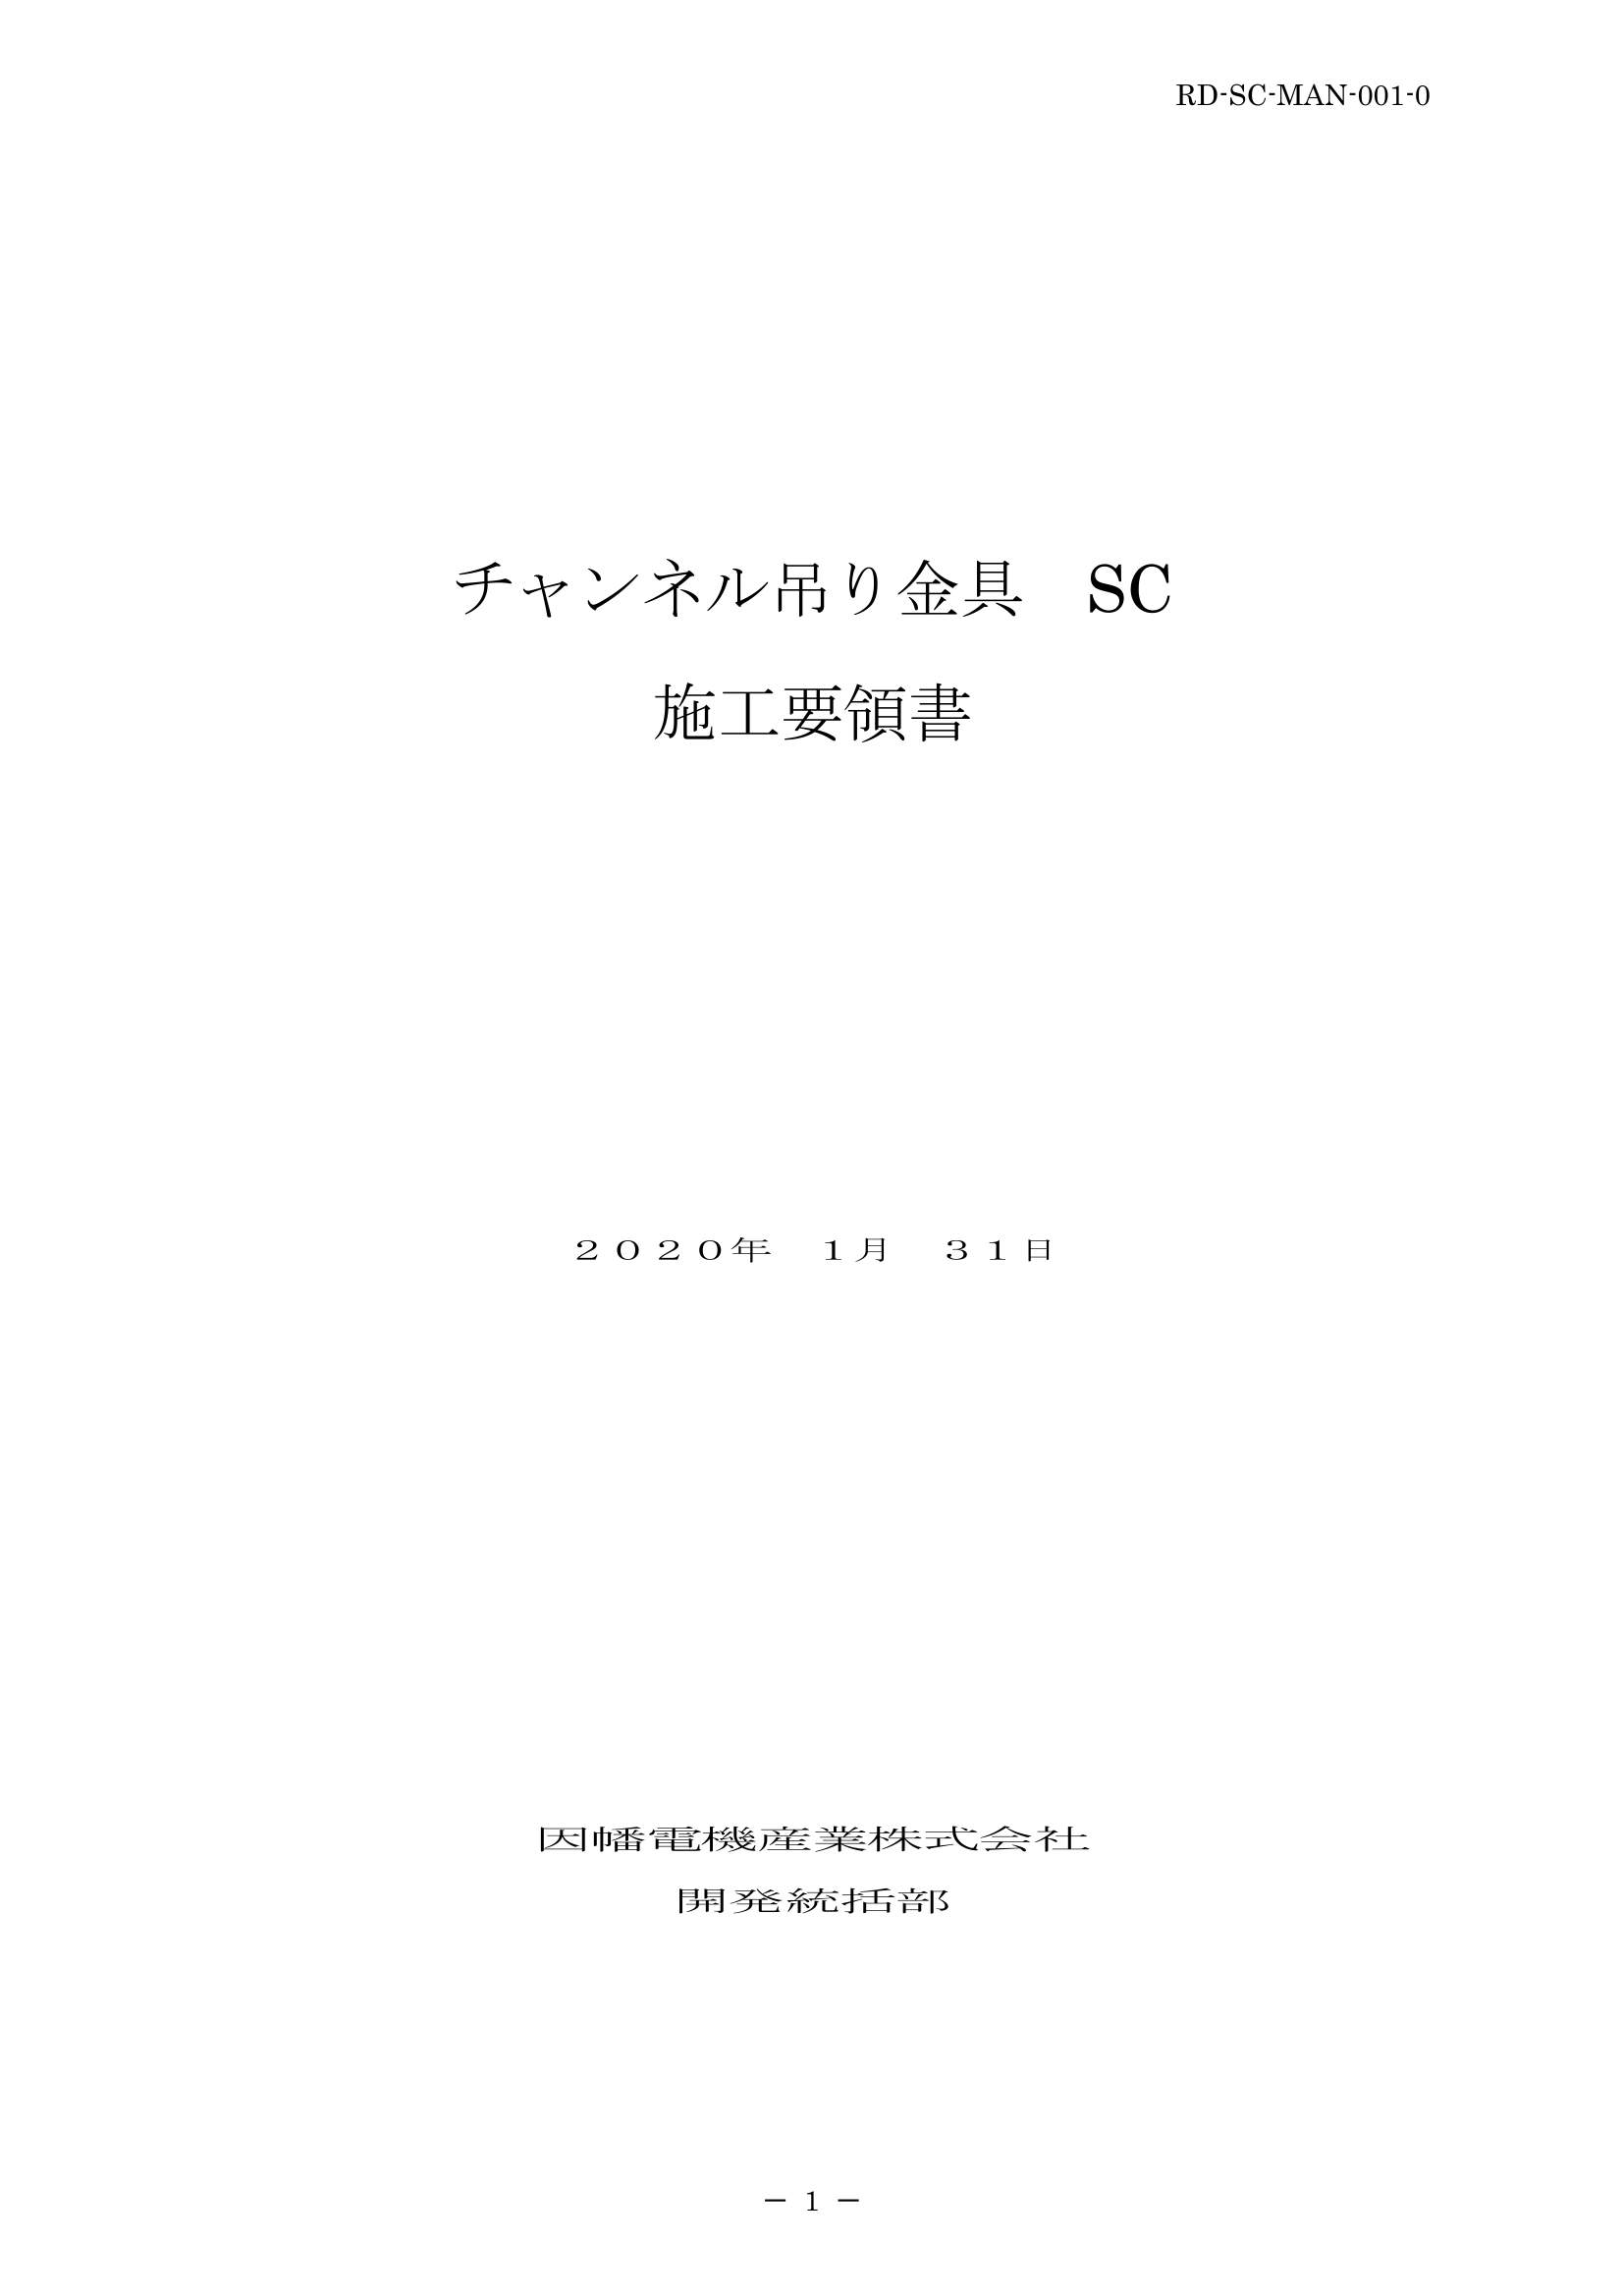 SC_施工要領手順書_20200131.pdf